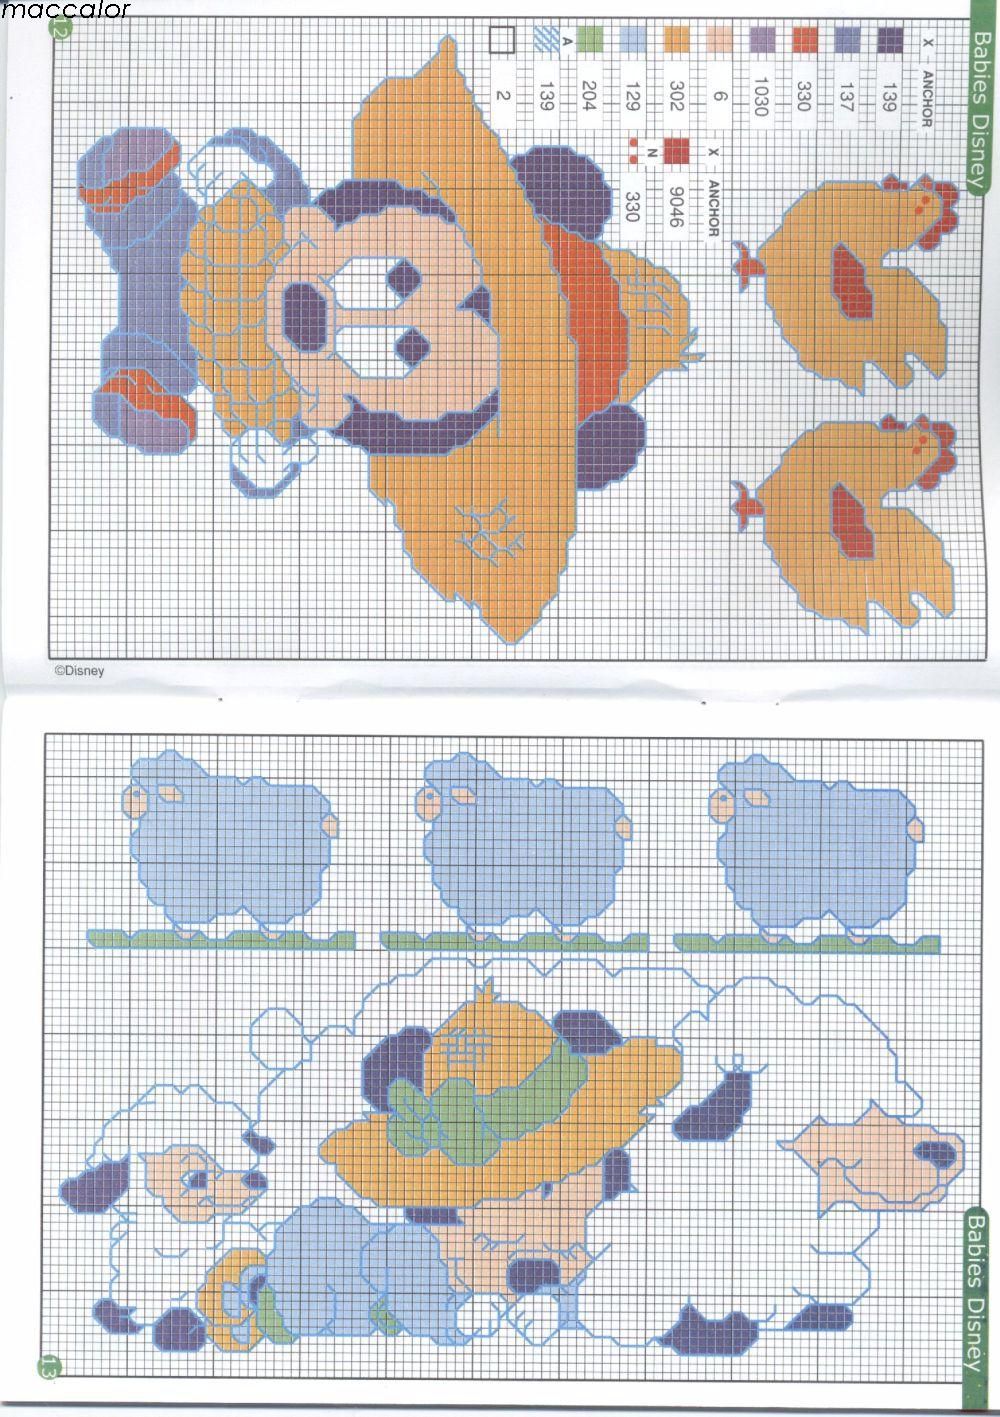 Beautiful Disney cross stitch patterns (3)